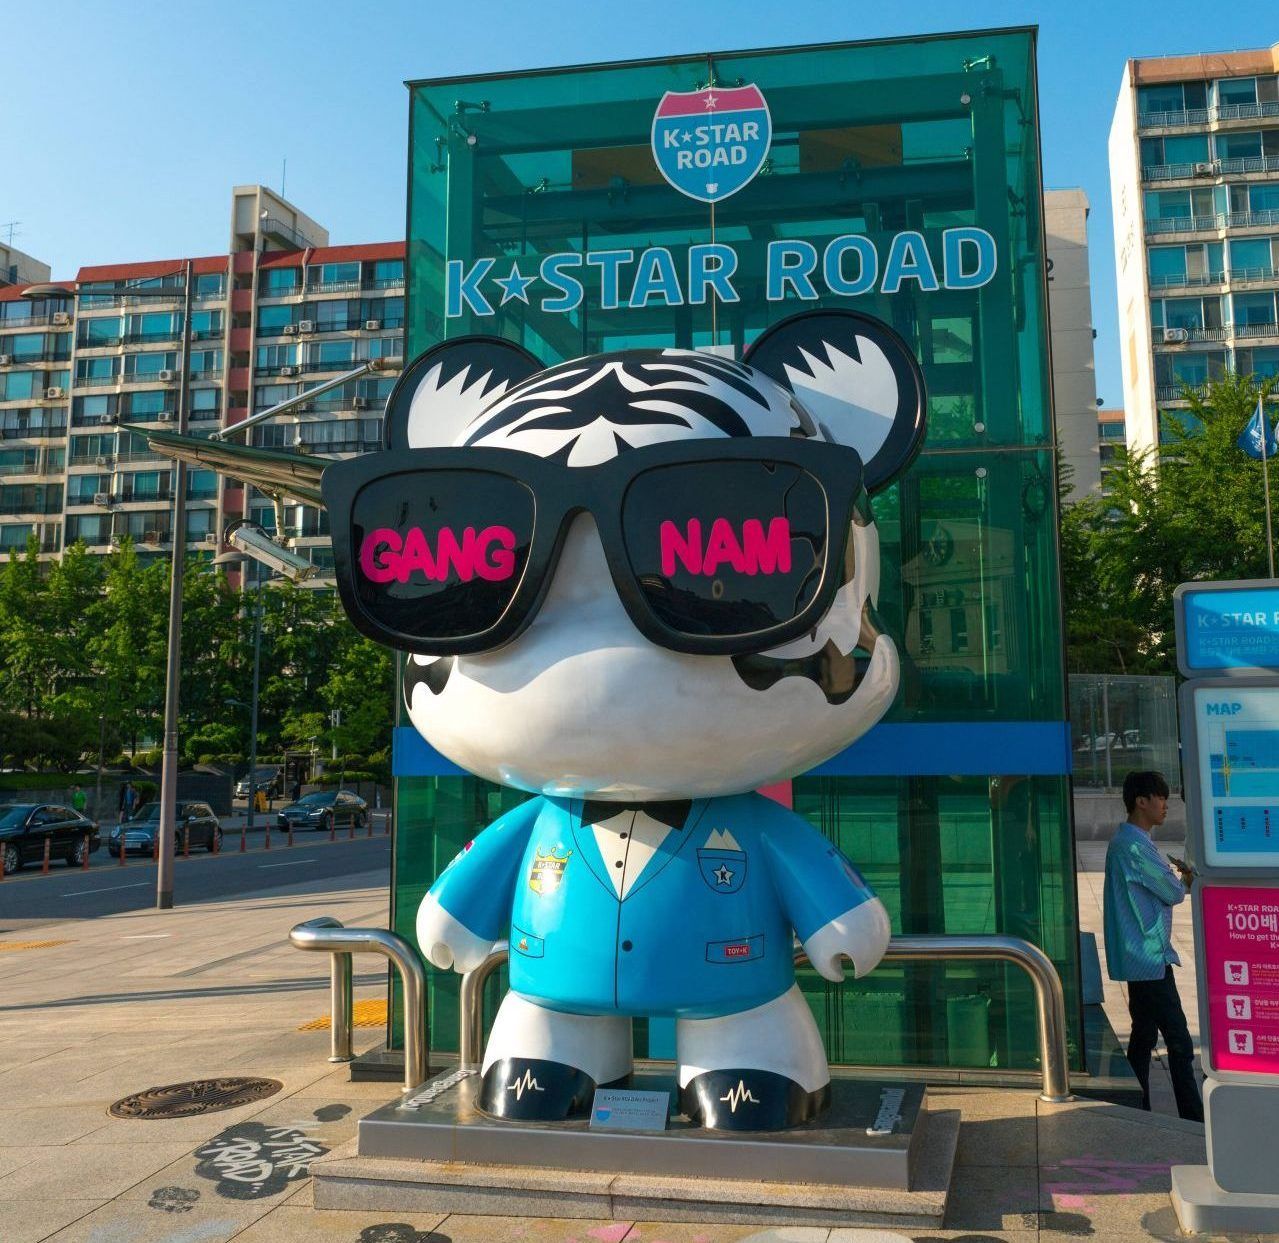 Südlich des Han-Flusses liegt das Hipster-Viertel Gangnam-gu. Designerläden, Galerien, stylishe Bars, It-Clubs, Restaurants und Street-Food - alles da. Den Sound dazu lieferte der südkoreanische Rapper Psy. Sein "Gangnam-Style" ging 2012 in die Youtube-Geschichte ein: Es war das erste Video bis dato, das 1 Milliarde "Views" verzeichnete (mittlerweile sind es über 4 Milliarden). Schlendert man die K-Star-Road entlang, kommt ma